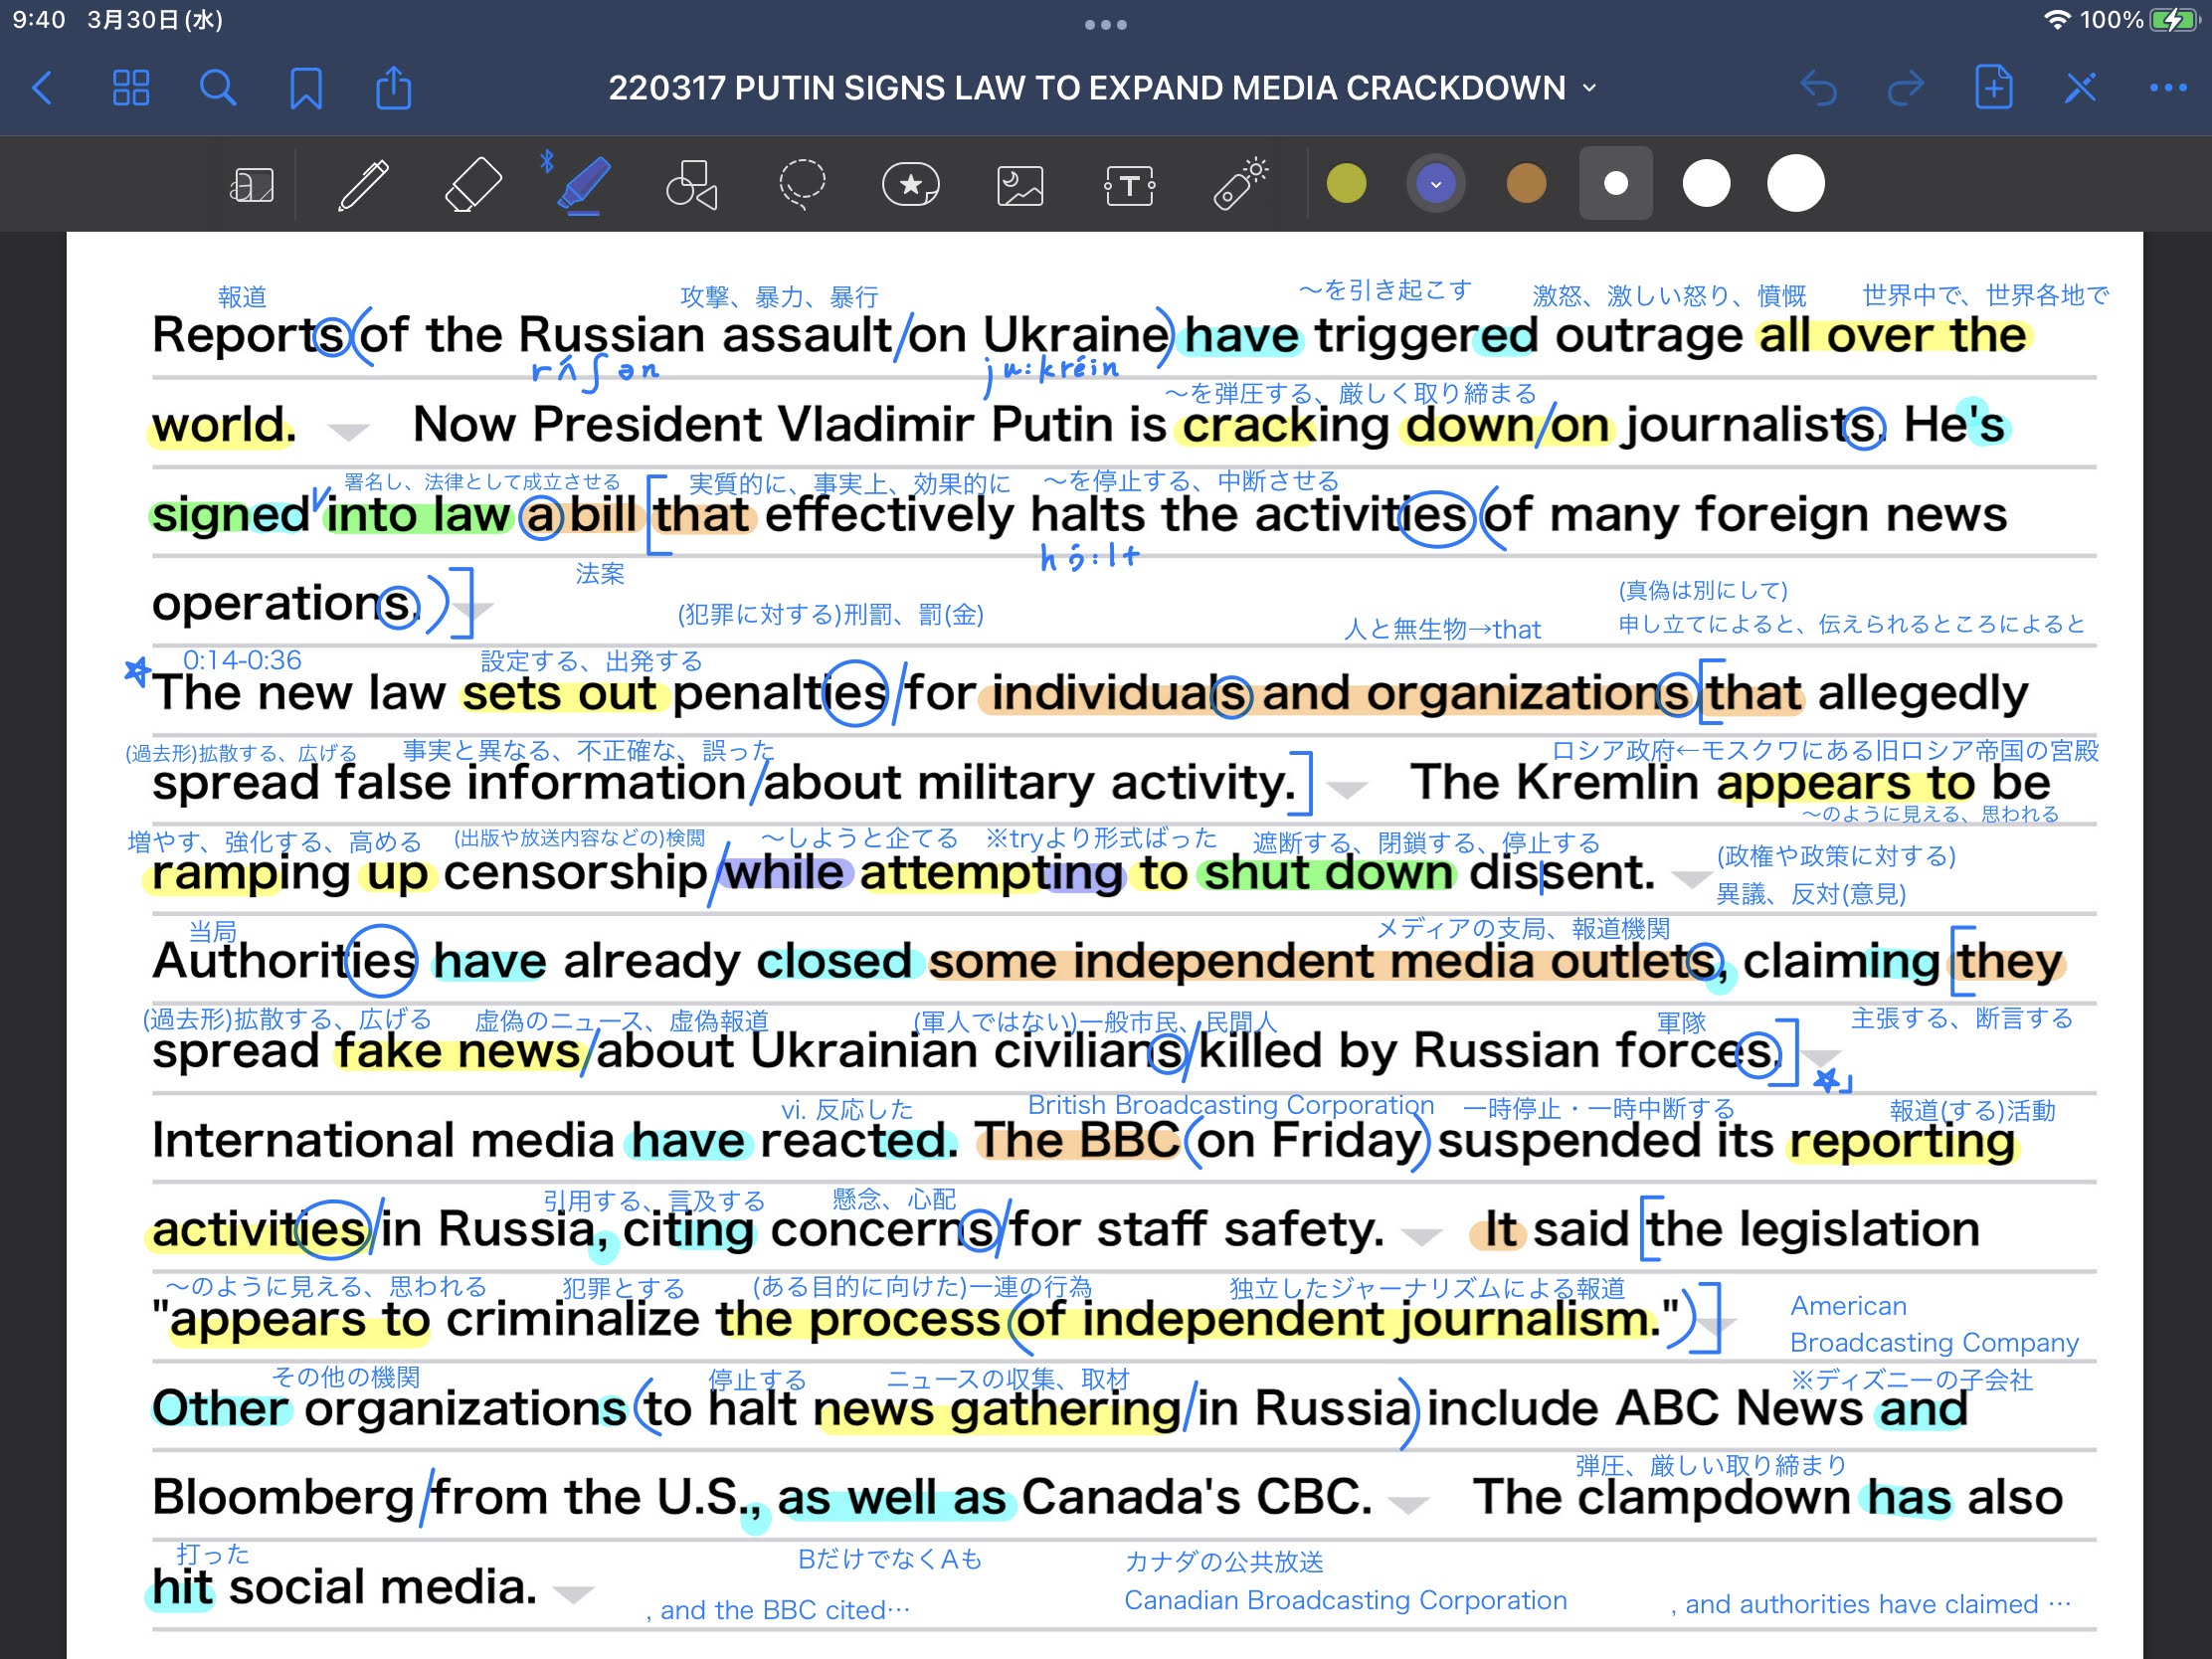 ロシア-報道統制を強化　PUTIN-SIGNS-LAW-TO-EXPAND-MEDIA-CRACKDOWN